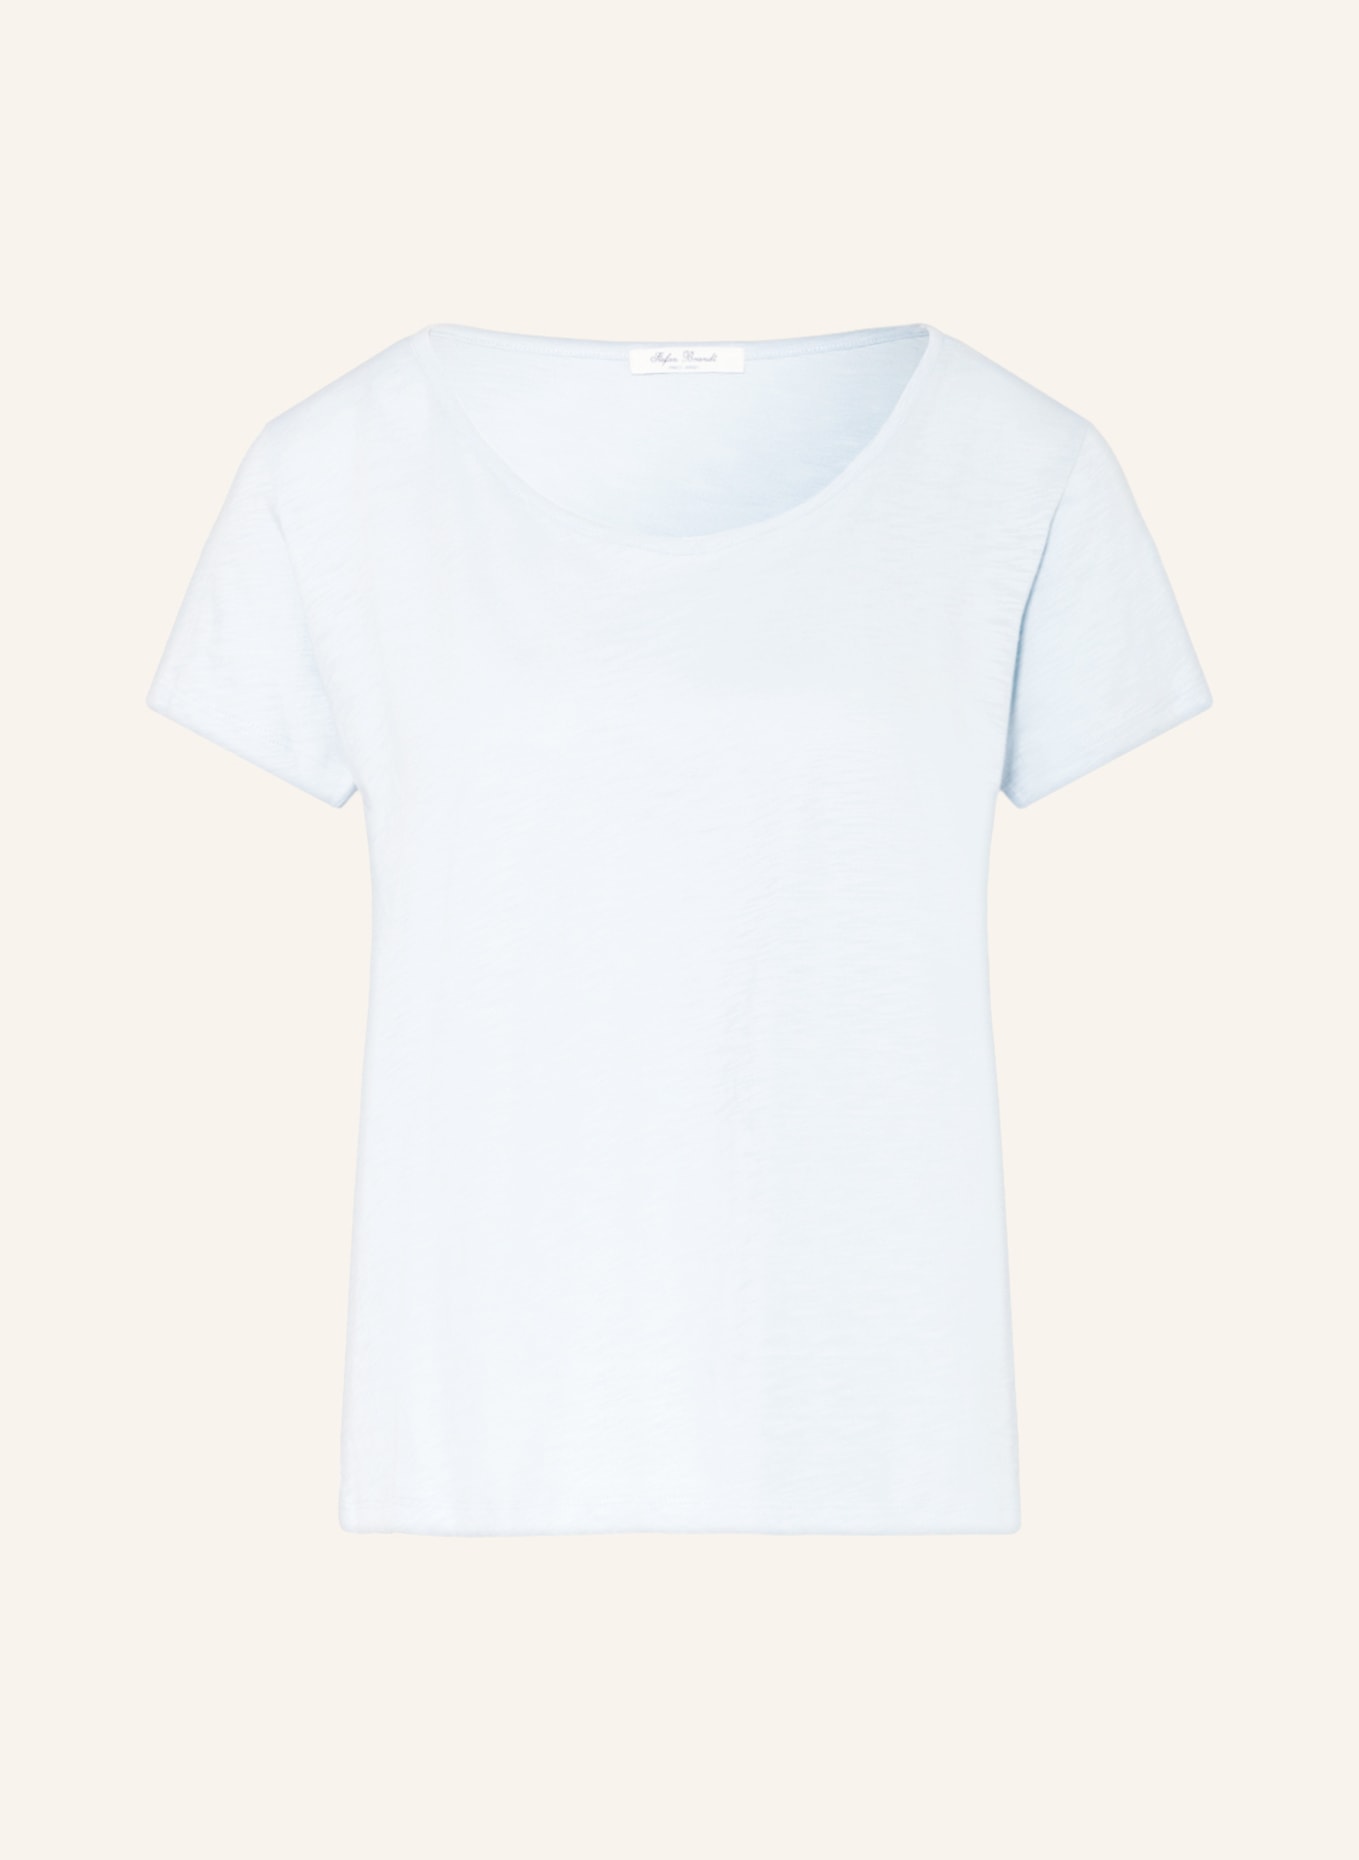 Stefan Brandt T-Shirt SIENNA, Farbe: HELLBLAU (Bild 1)